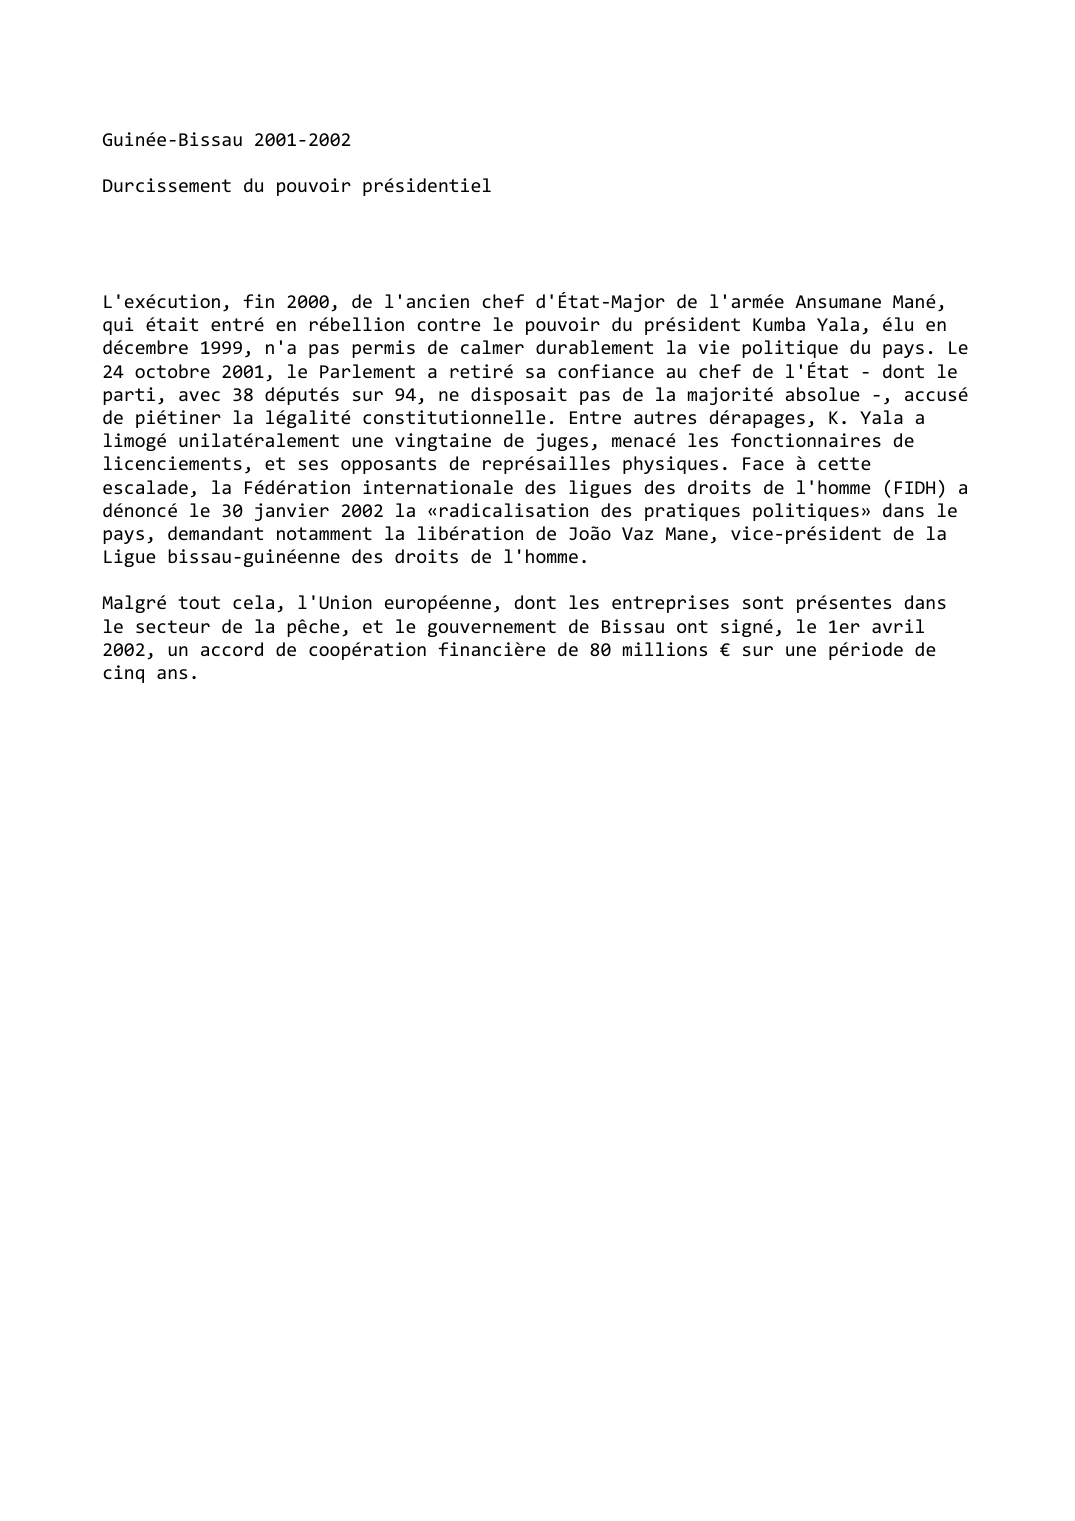 Prévisualisation du document Guinée-Bissau 2001-2002: Durcissement du pouvoir présidentiel